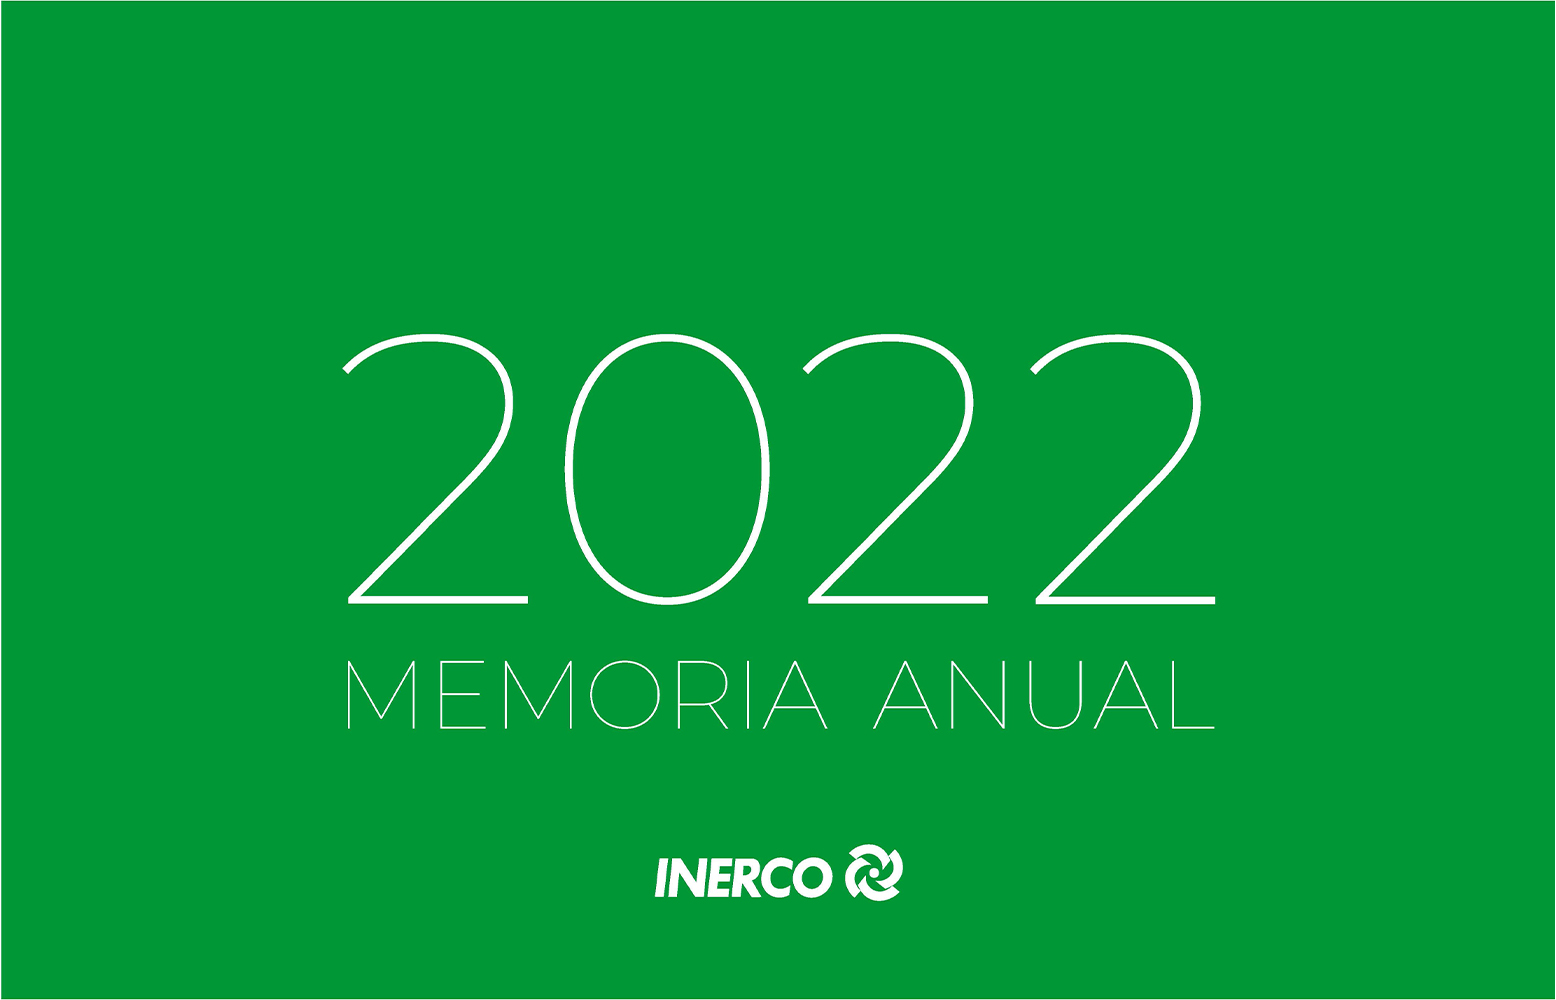 INERCO Memoria Anual 2022